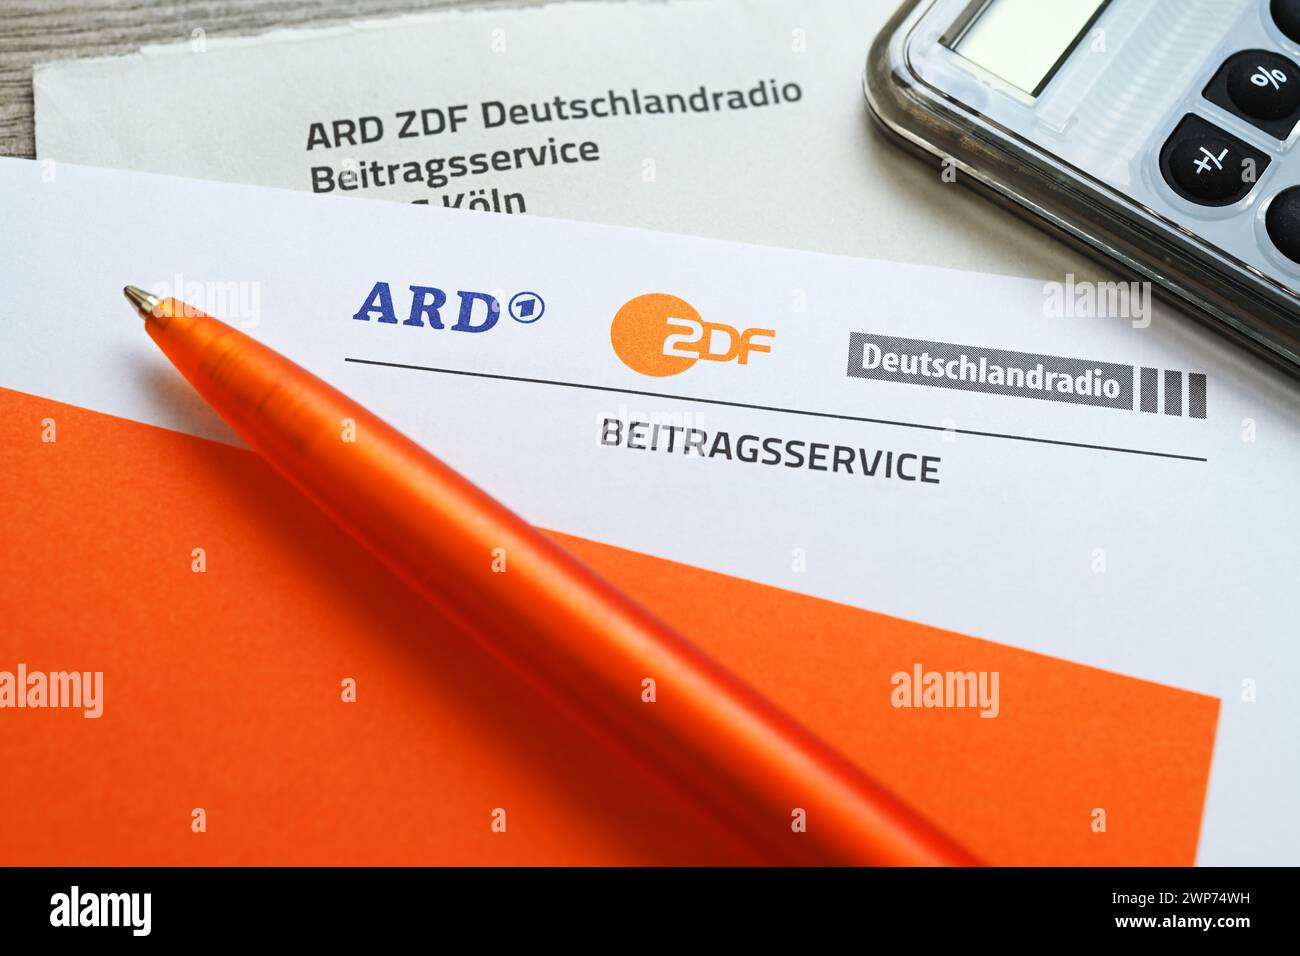 Brief des ARD ZDF Deutschlandradio Beitragsservice mit Taschenrechner, Symbolfoto Erhöhung des Rundfunkbeitrags Foto Stock